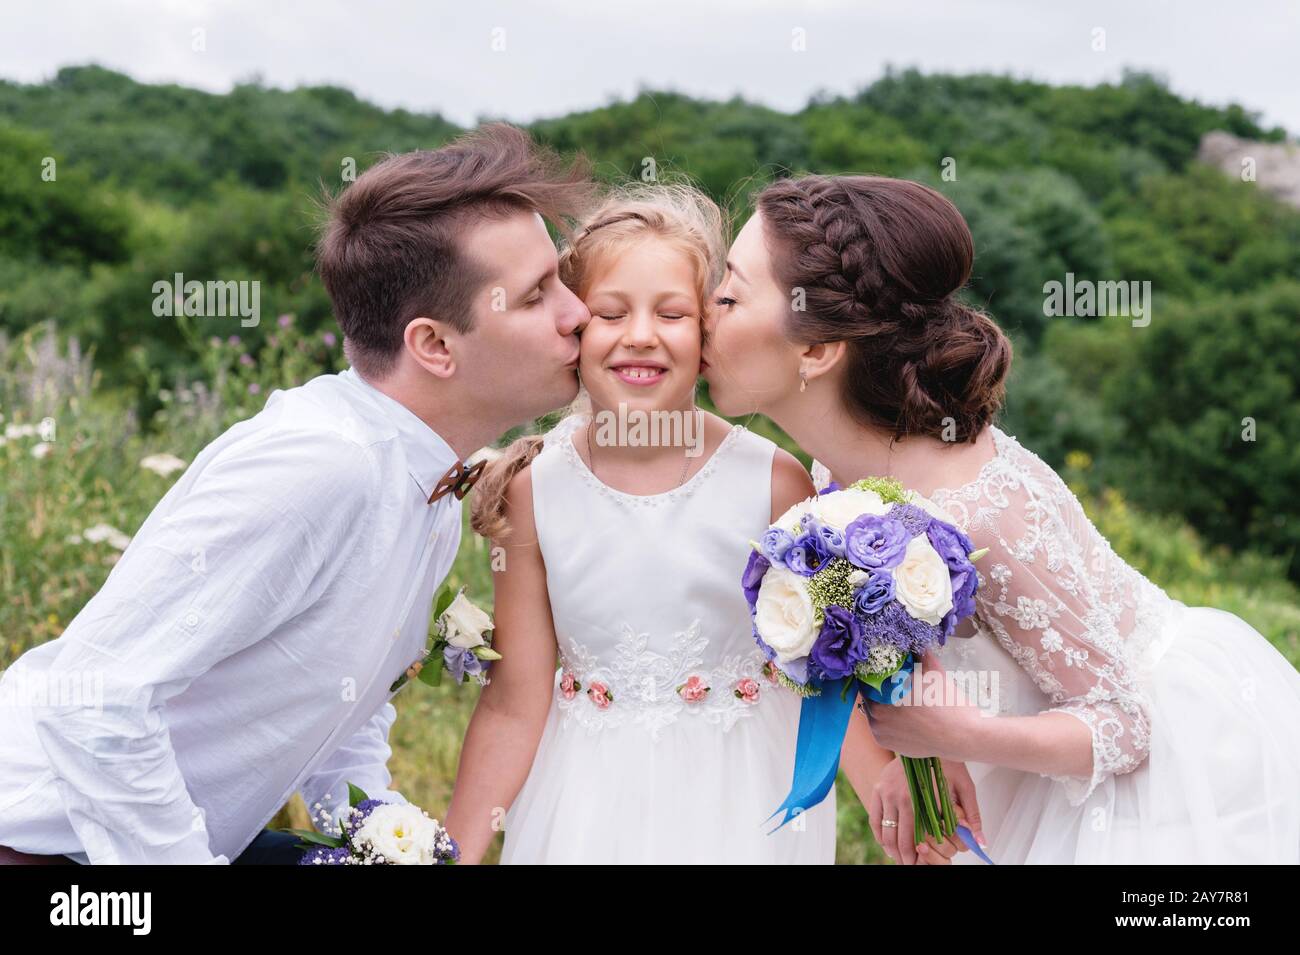 Les jeunes parents dans les robes de mariage embrassent leur jeune fille dans les joues Banque D'Images